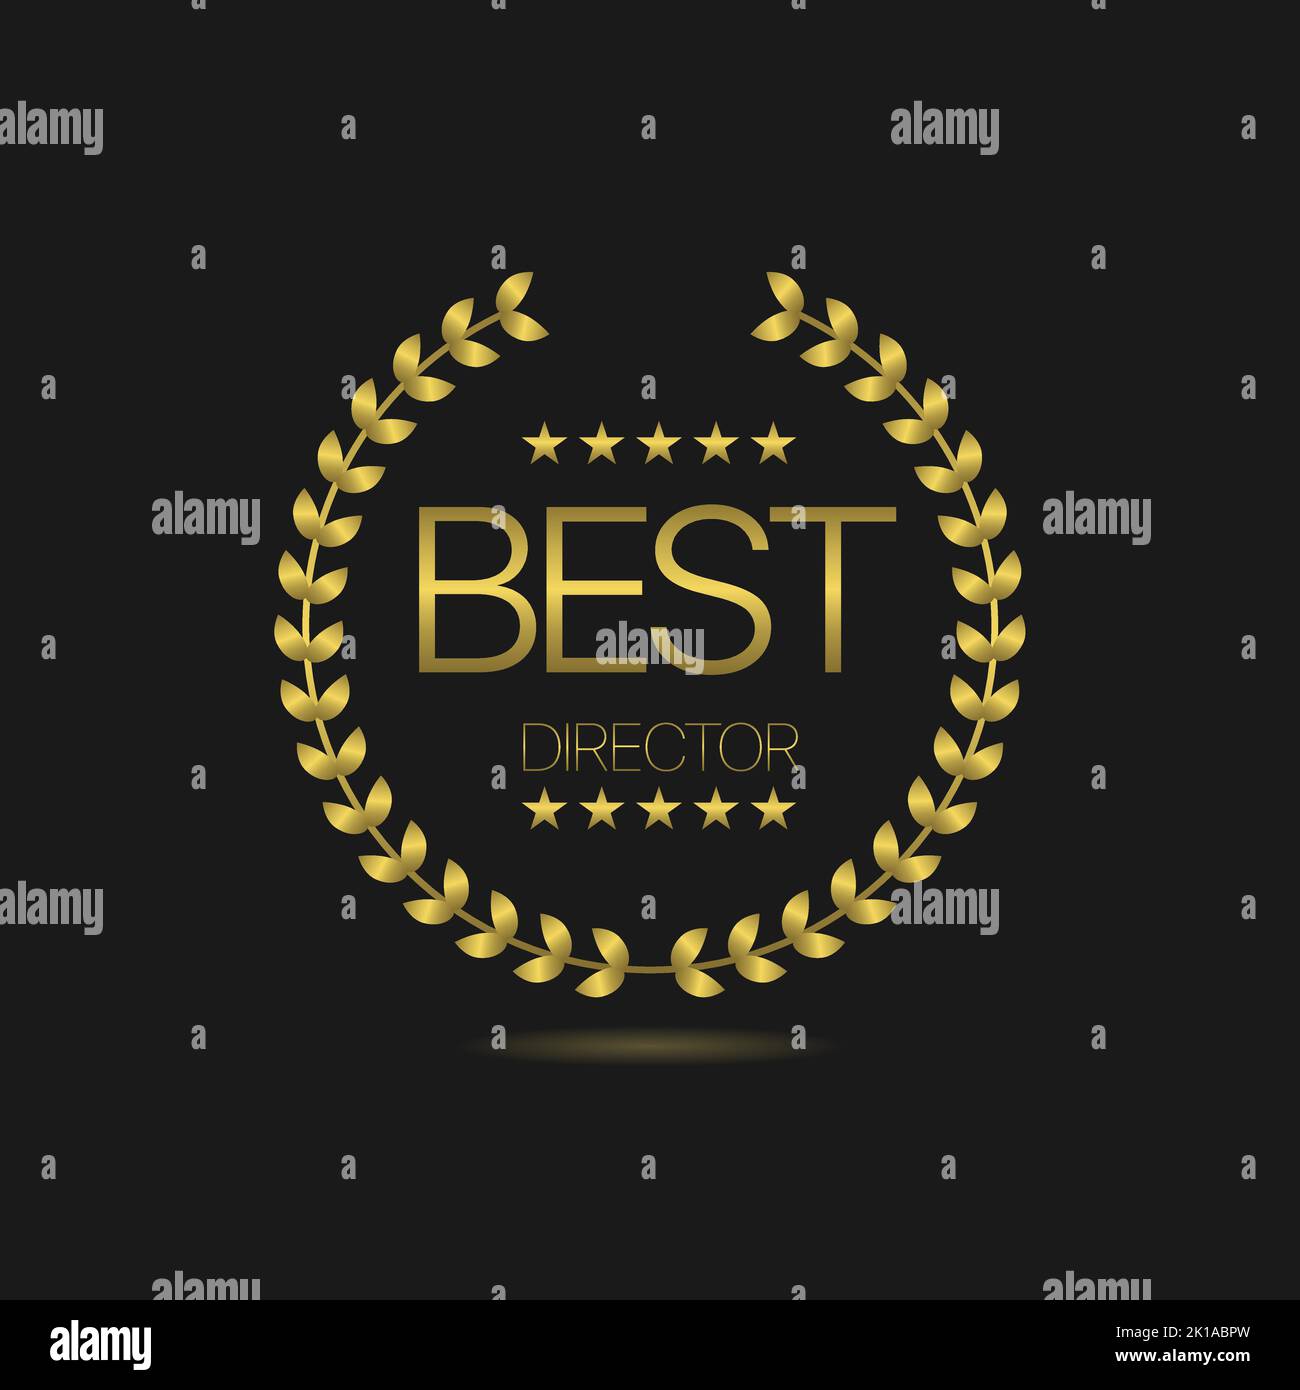 Best director golden laurel wreath label Stock Vector